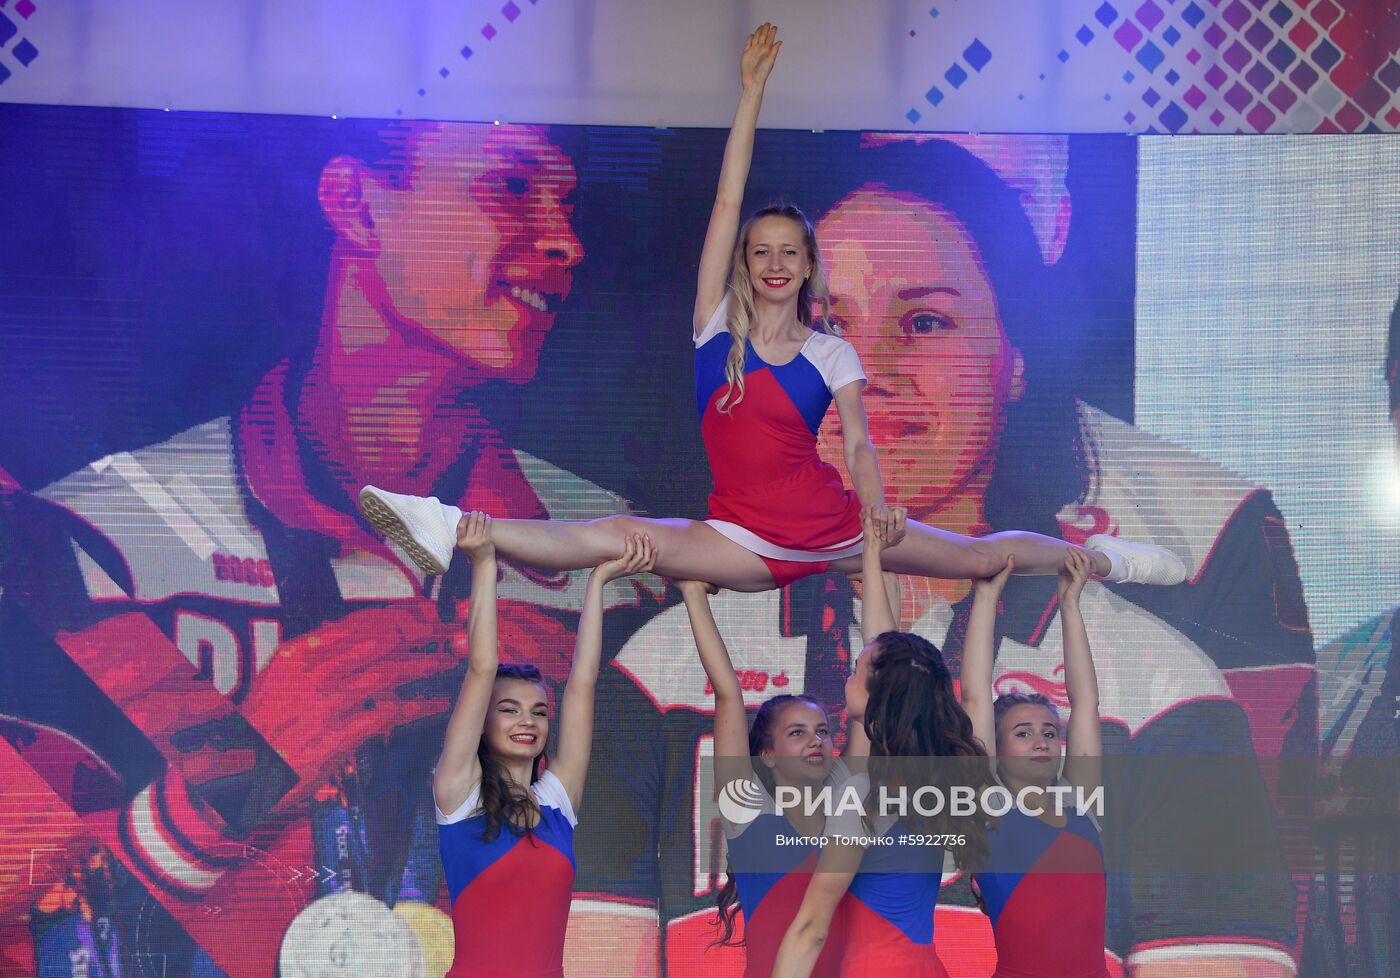 Открытие Дома болельщиков команды России на II Европейских играх